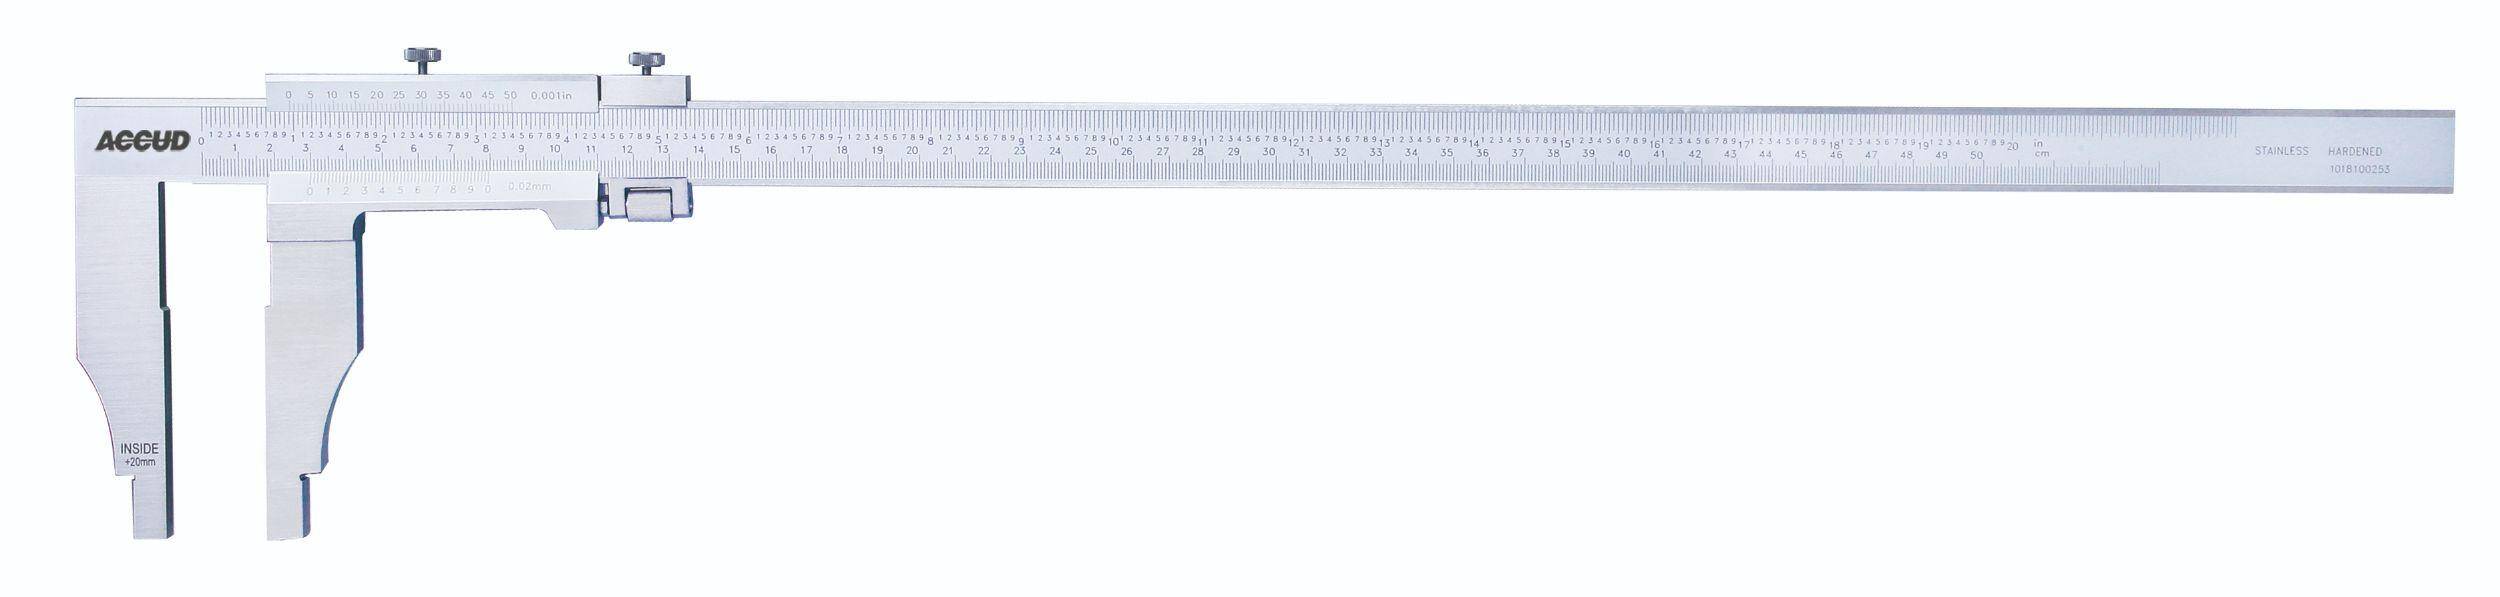 ACCUD suwmiarka analogowa 500/0.05 mm jednostronna długość szczęk 100 mm 128-020-51 (Zdjęcie 1)